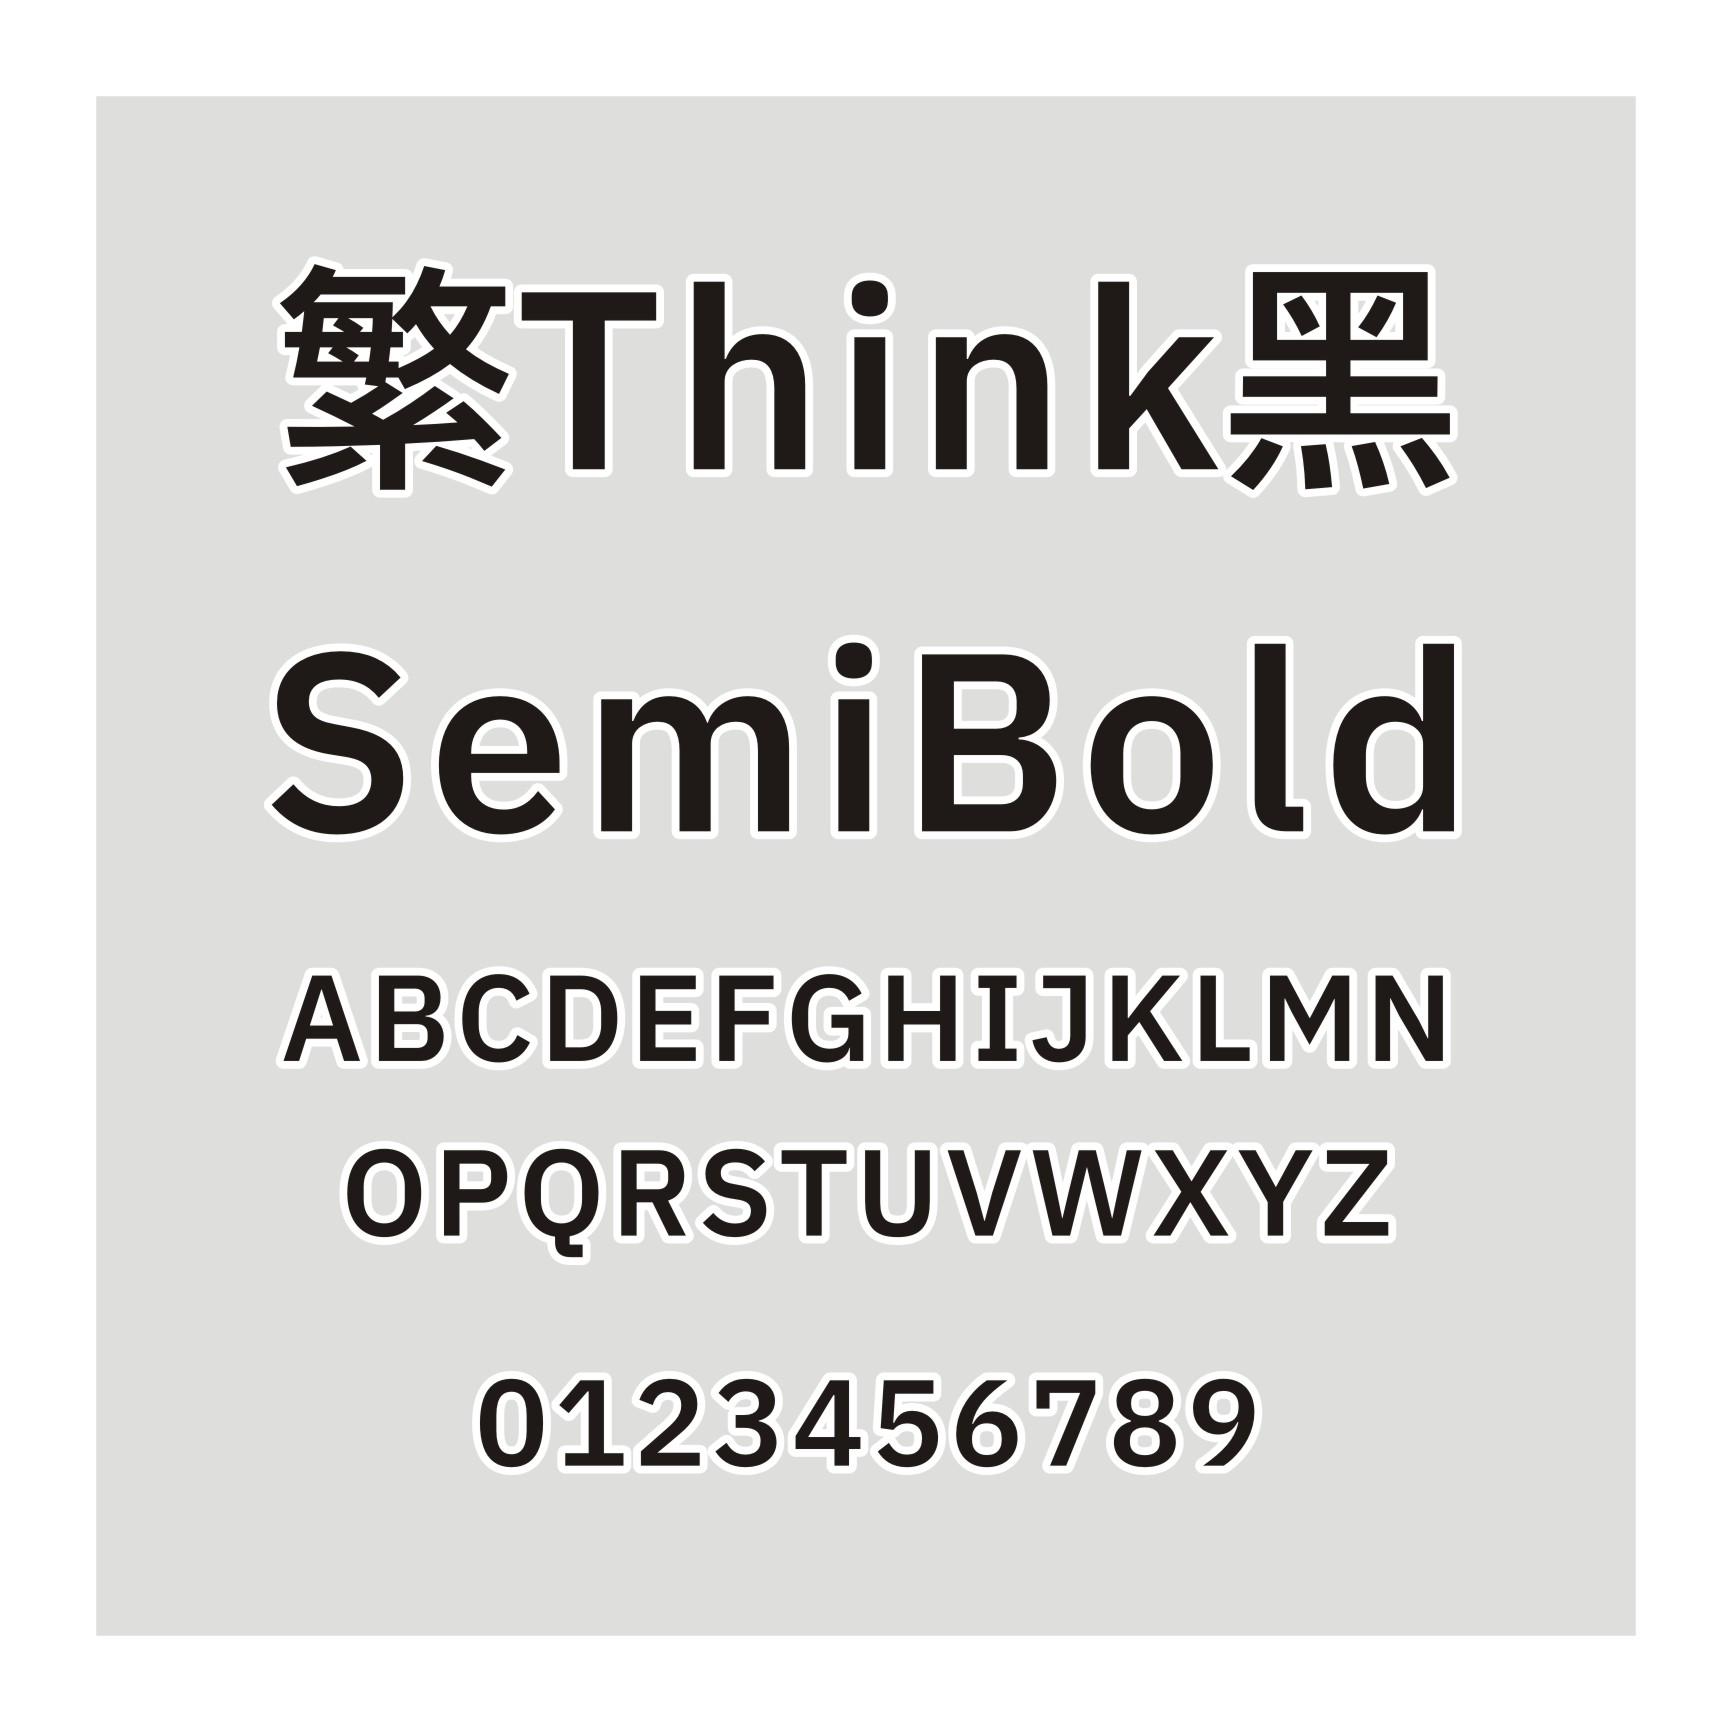 繁Think黑 SemiBold